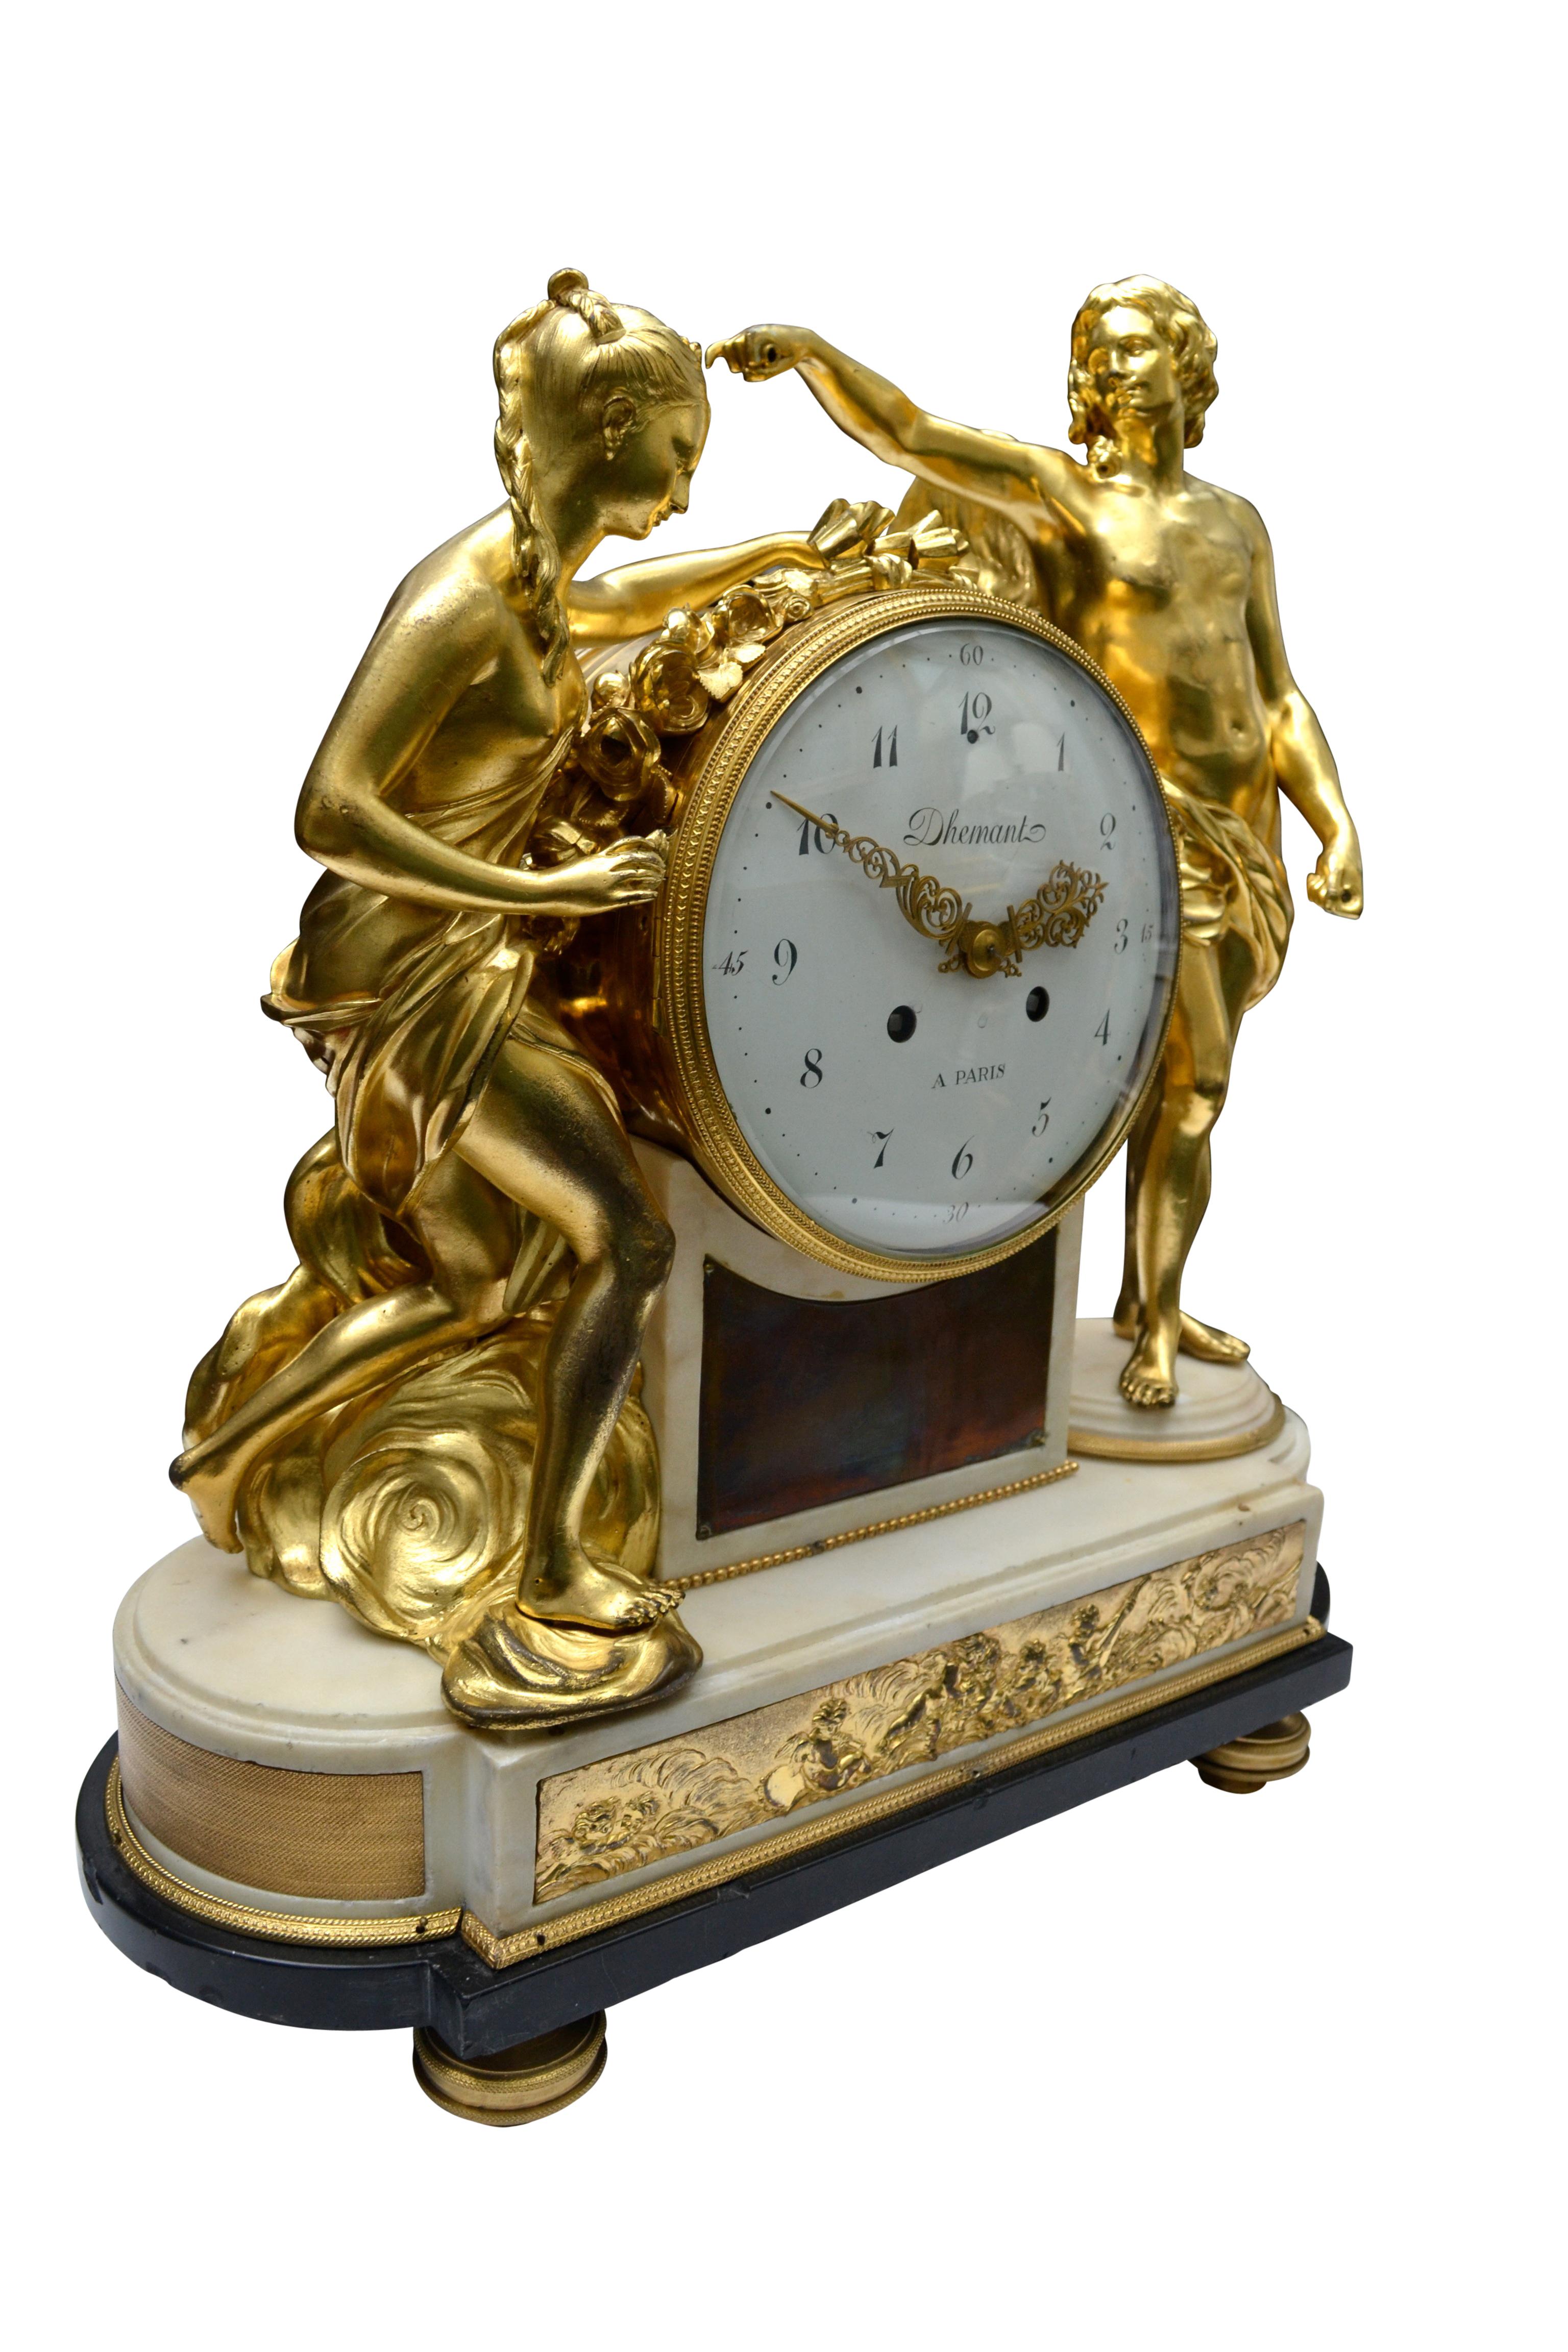 Un modèle fin et rare d'une horloge de cheminée d'époque Louis XVI en marbre blanc et bronze doré, le cadran signé Dhemant A Paris. L'horloge présente deux grandes figures en bronze doré, drapées de façon classique, de part et d'autre du grand